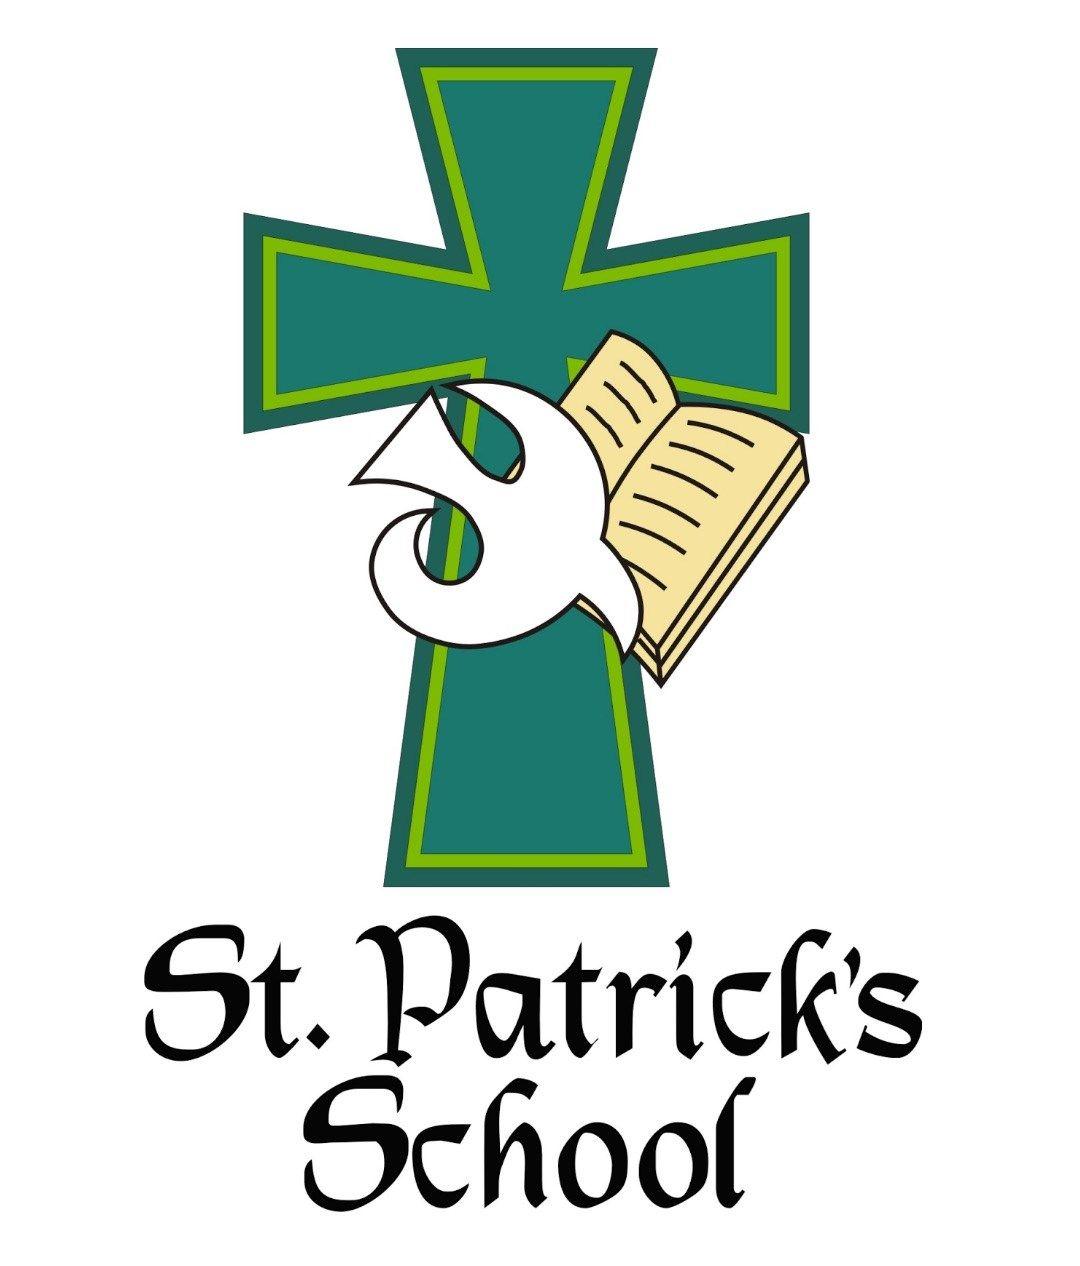 Patrick Logo - About - St. Patrick's School